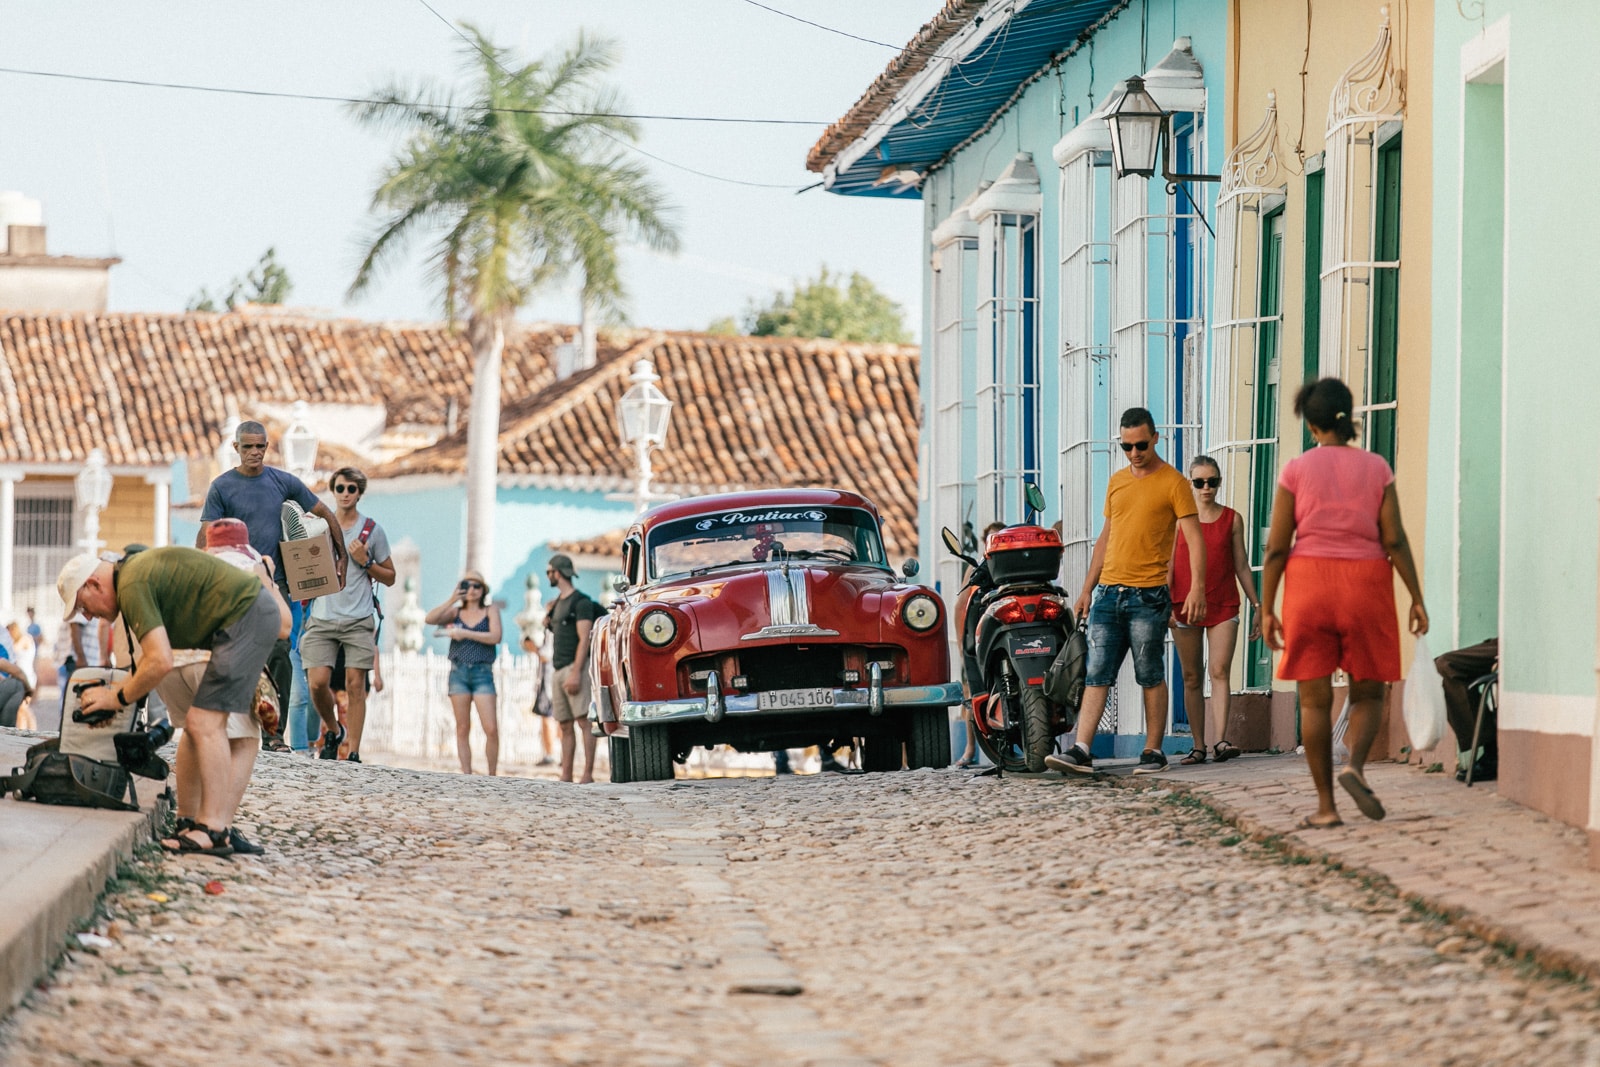 ID5A9122 - Notre voyage à Cuba : Itinéraire et conseils